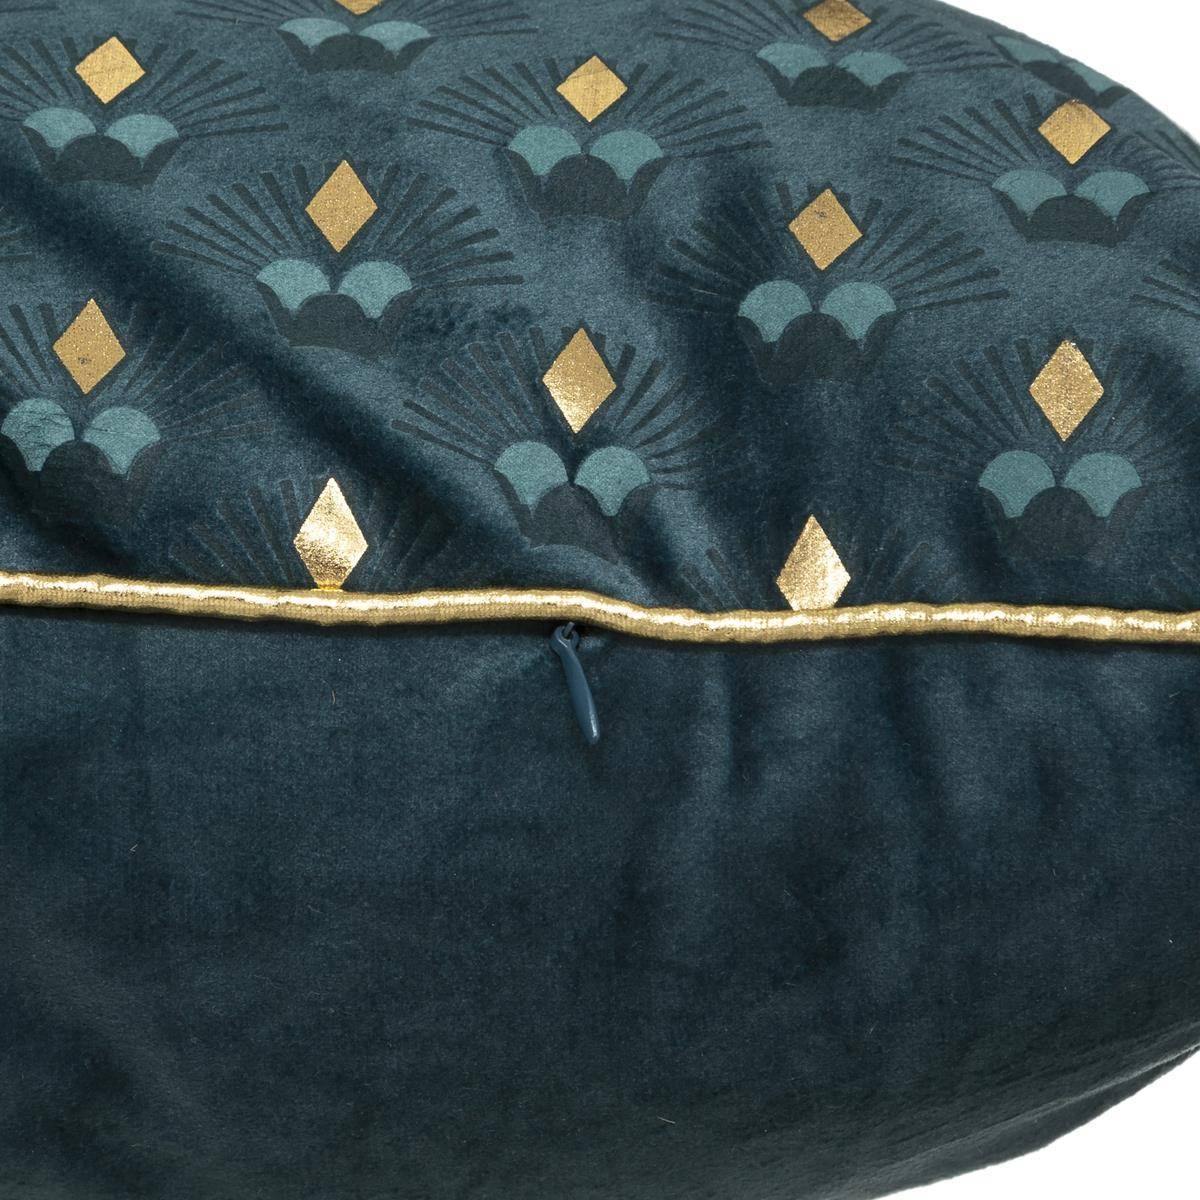 Podłużna poduszka ozdobna w morskim kolorze, poliester, 35 x 75 cm